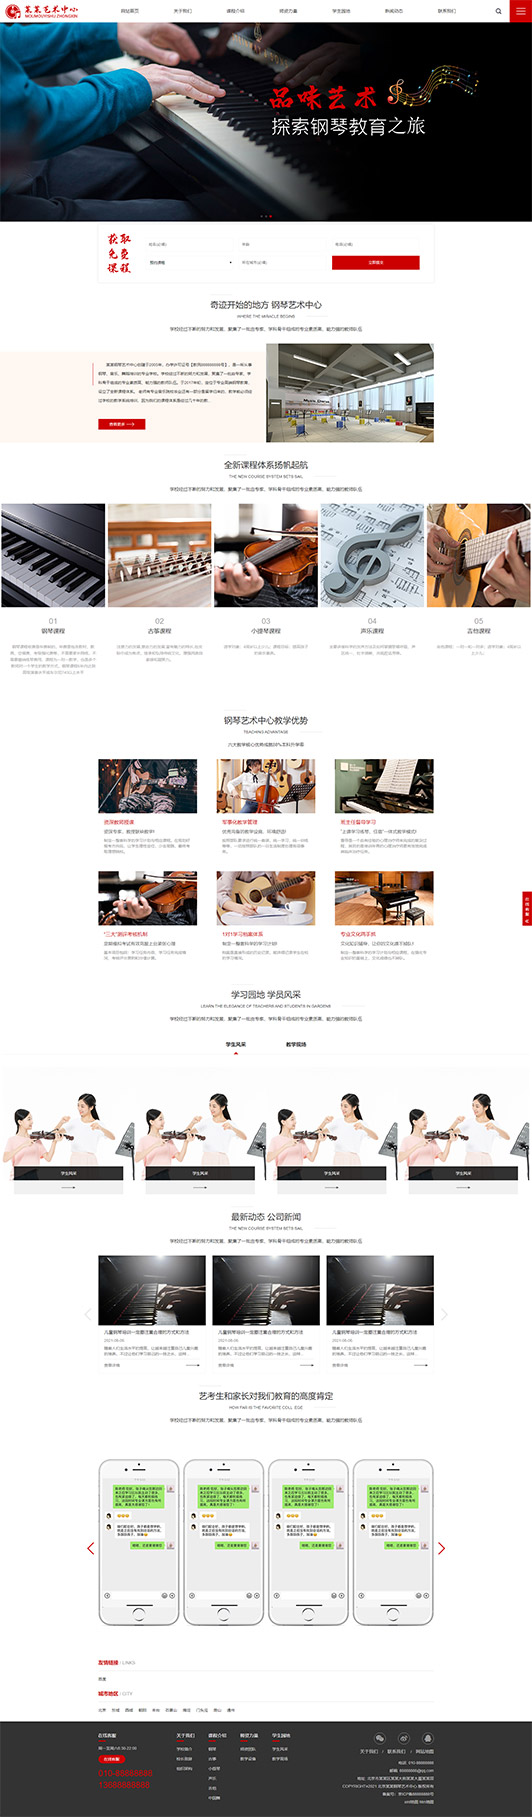 玉溪钢琴艺术培训公司响应式企业网站